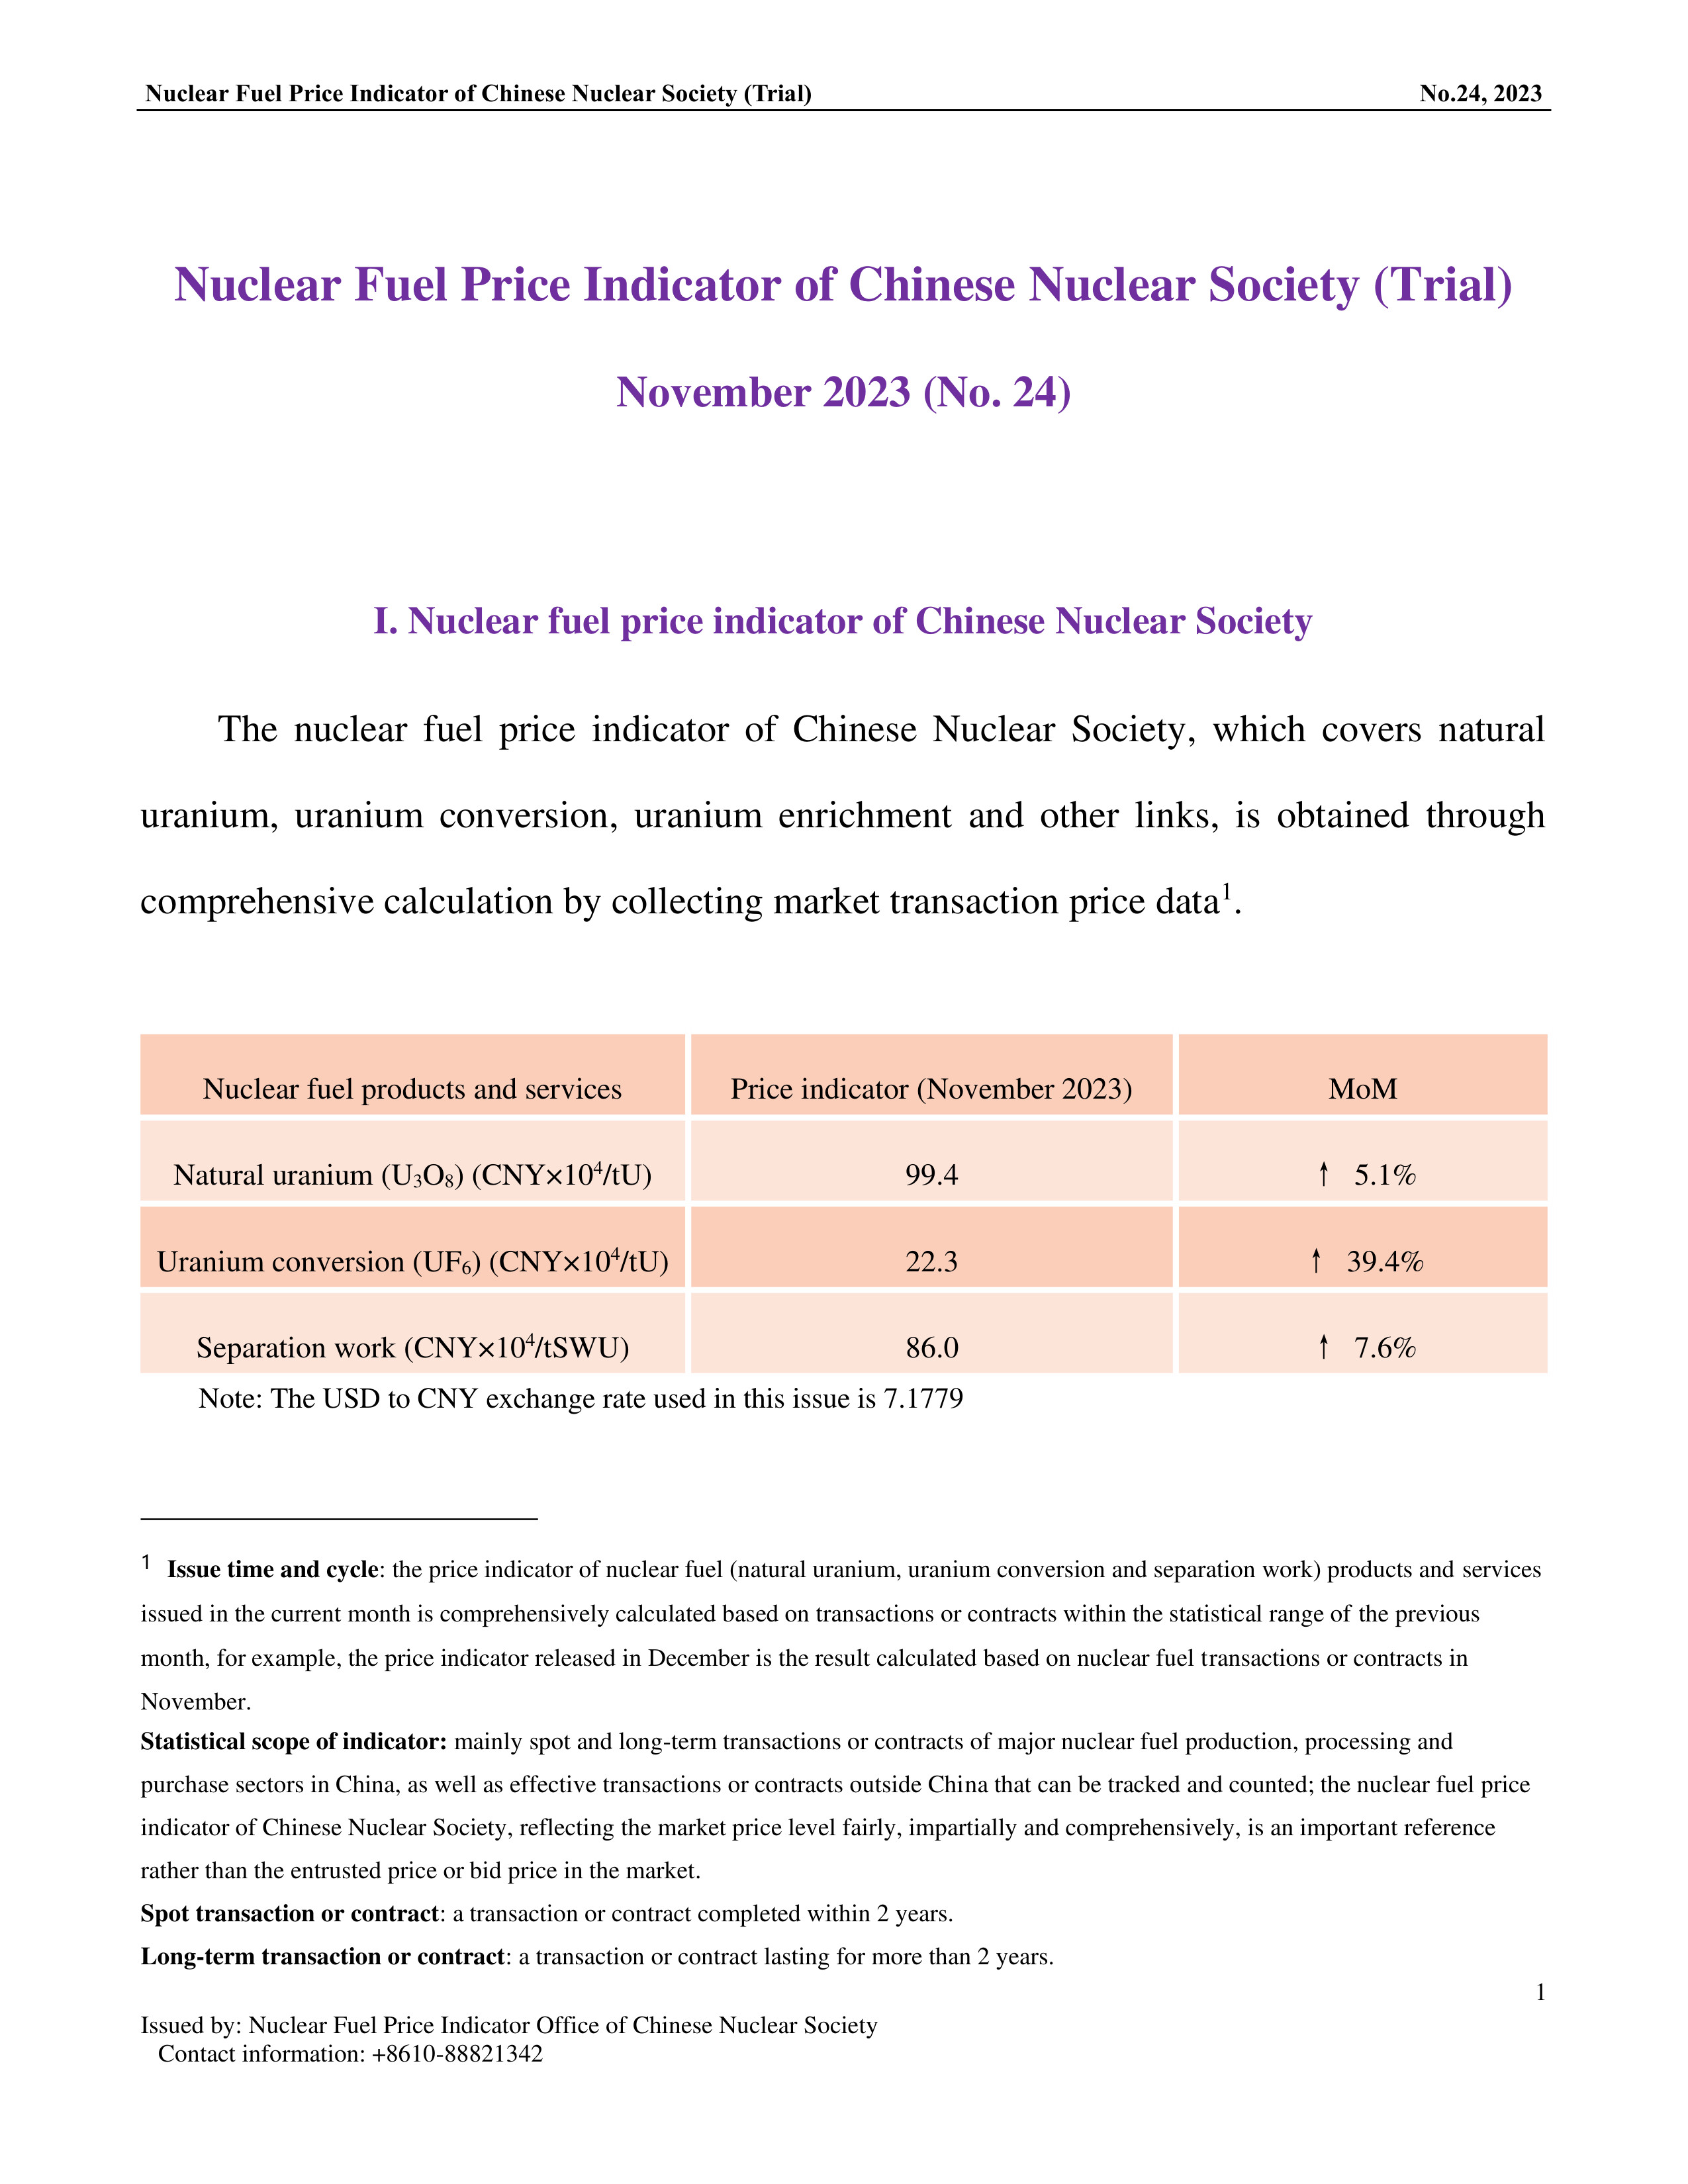 中国核学会核燃料价格指数(试运行)（2023年11月,总第24期）_EN-1.jpg